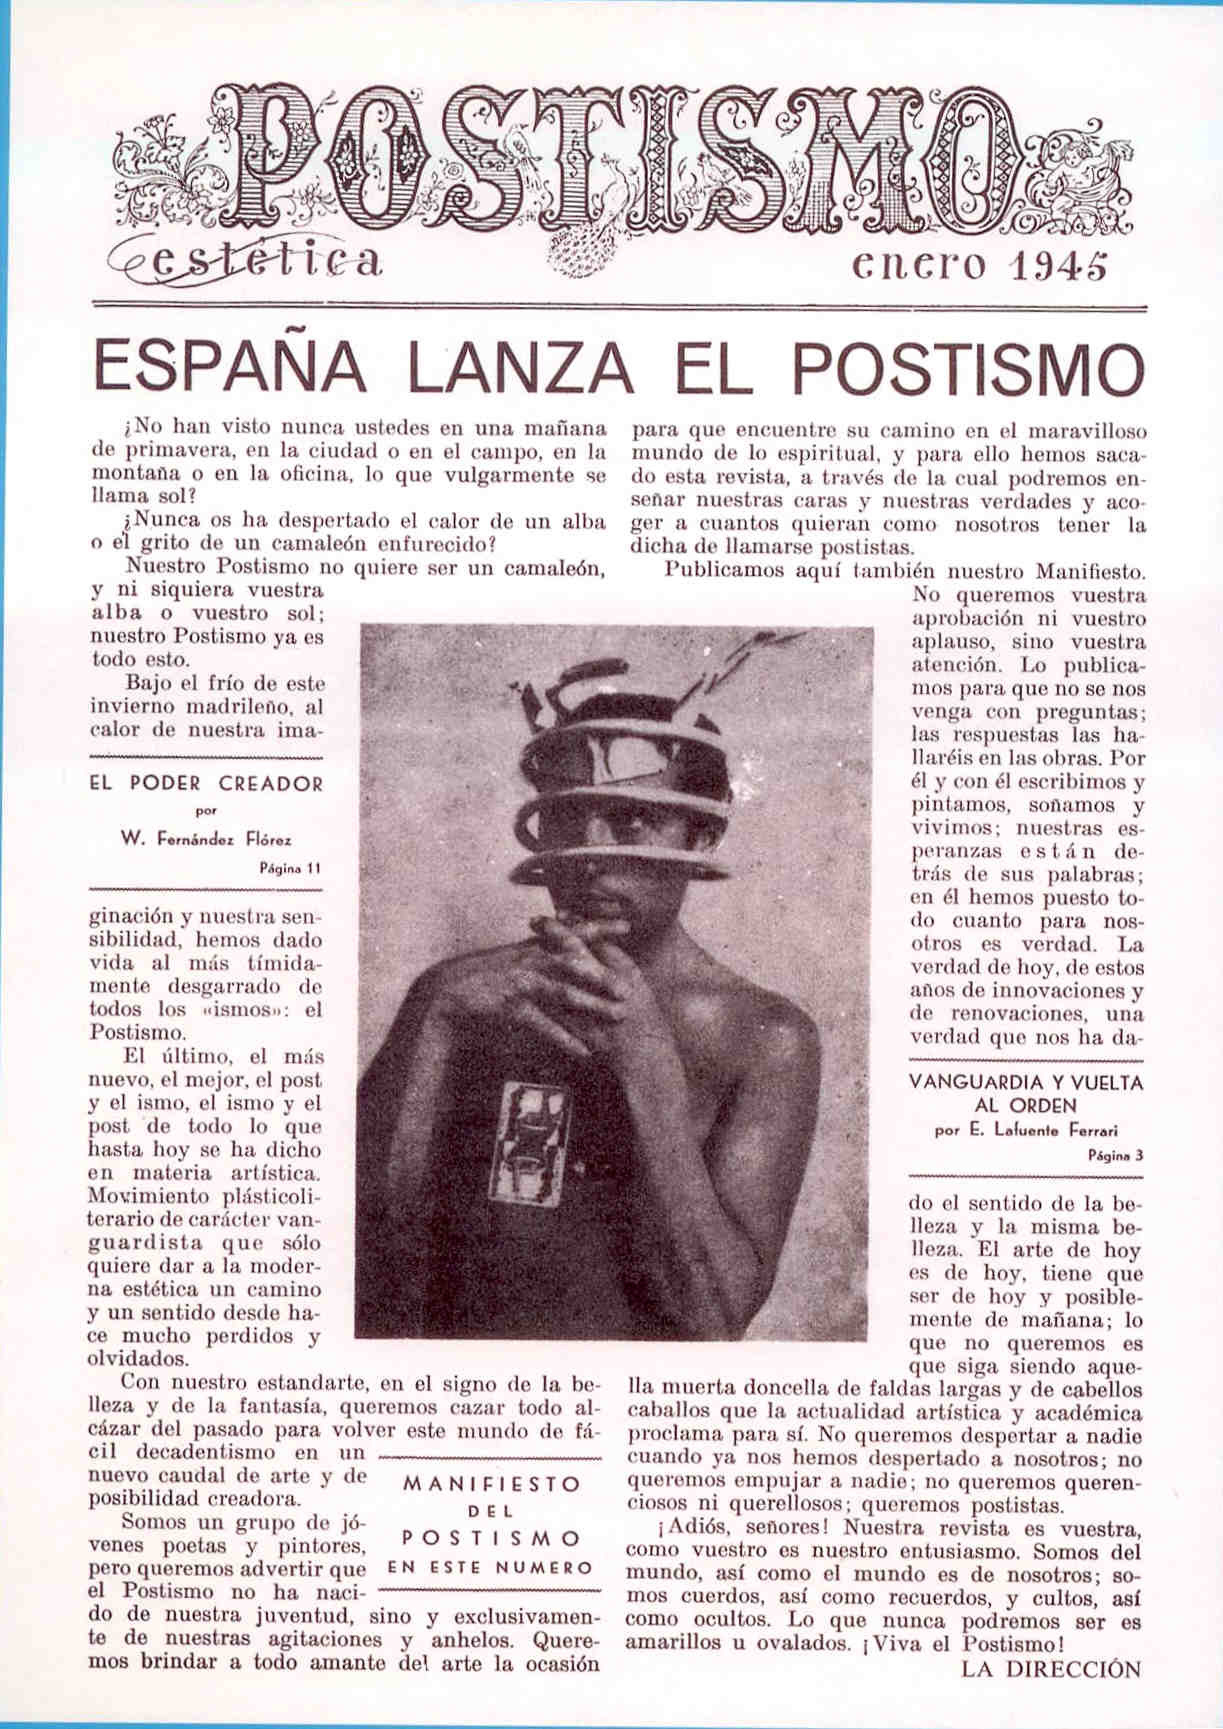 2.3.2 La poesía total En enero de 1945 apareció la revista La esfera literaria, creada en España para divulgar el Postismo.